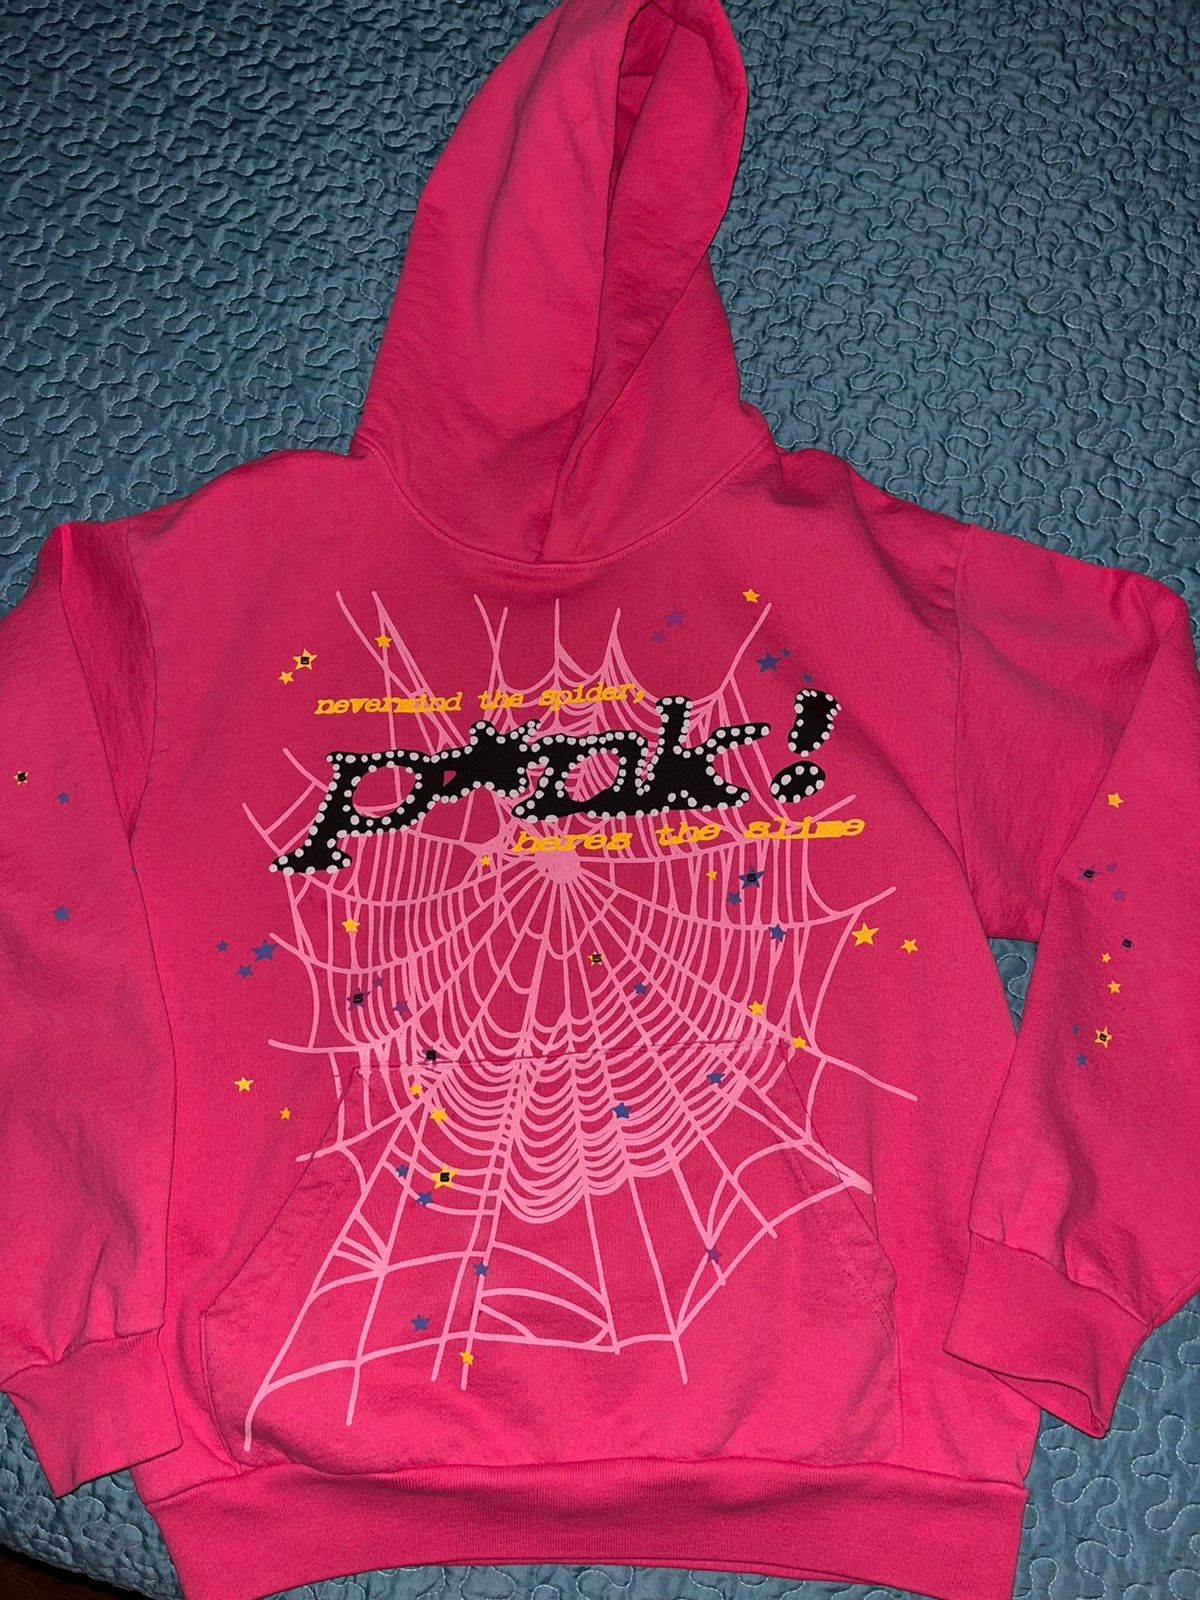 Spider Worldwide Sp5der Pink Punk Hoodie Size US M / EU 48-50 / 2 - 1 Preview